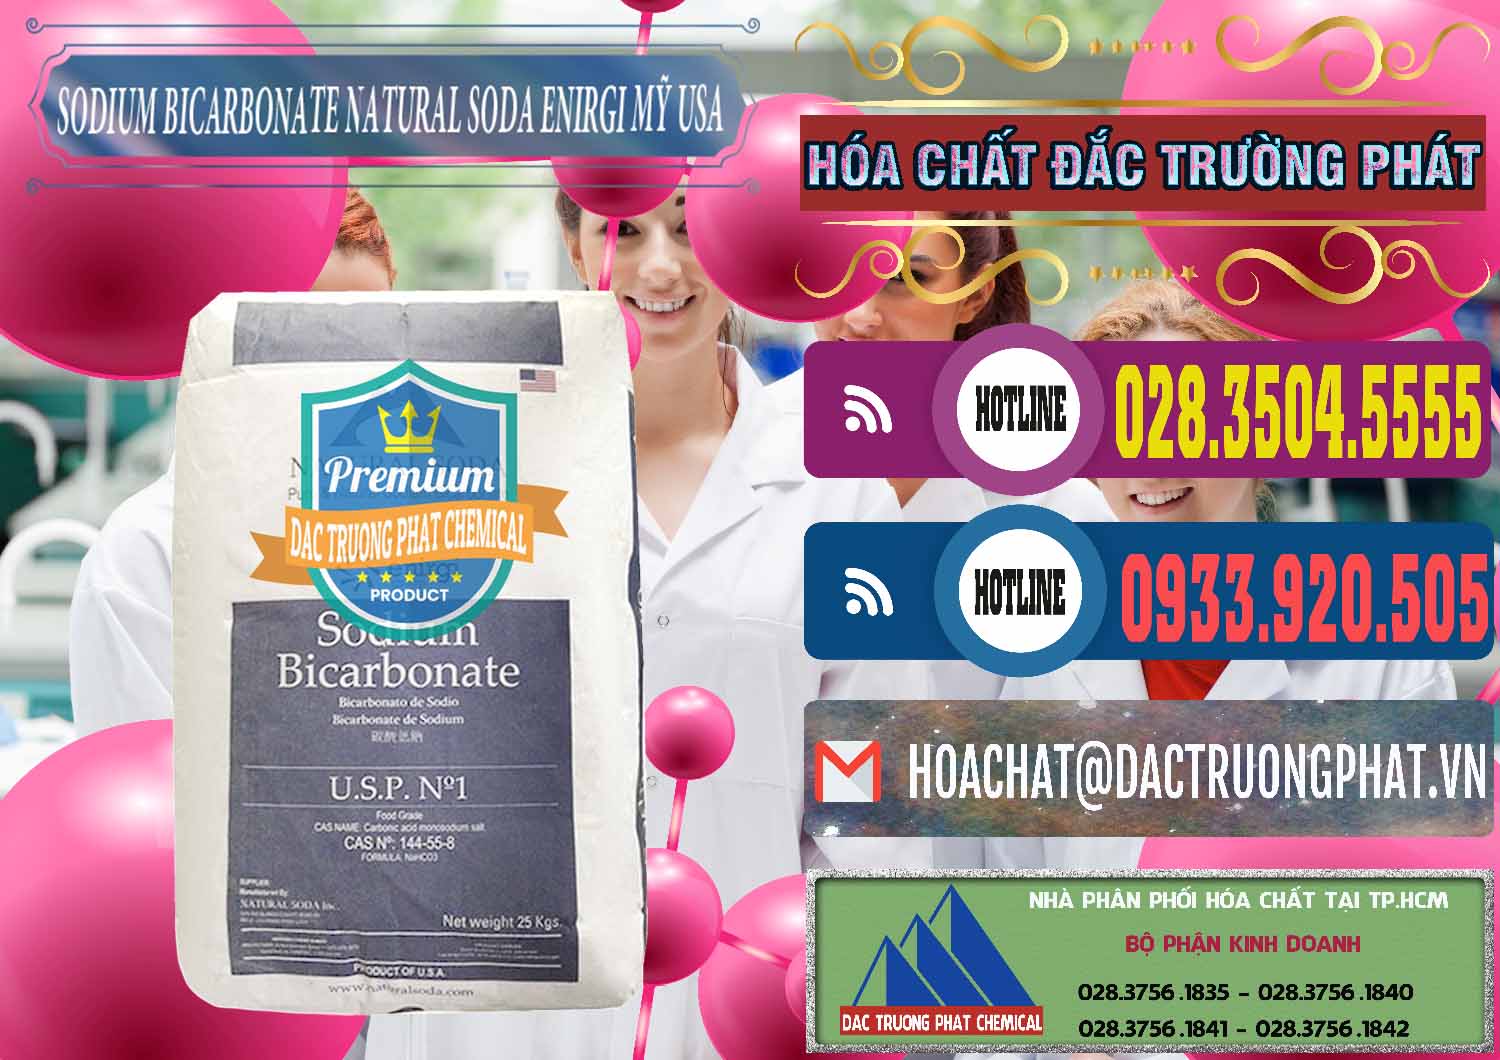 Nhà nhập khẩu ( bán ) Sodium Bicarbonate – Bicar NaHCO3 Food Grade Natural Soda Enirgi Mỹ USA - 0257 - Cty bán và phân phối hóa chất tại TP.HCM - muabanhoachat.com.vn